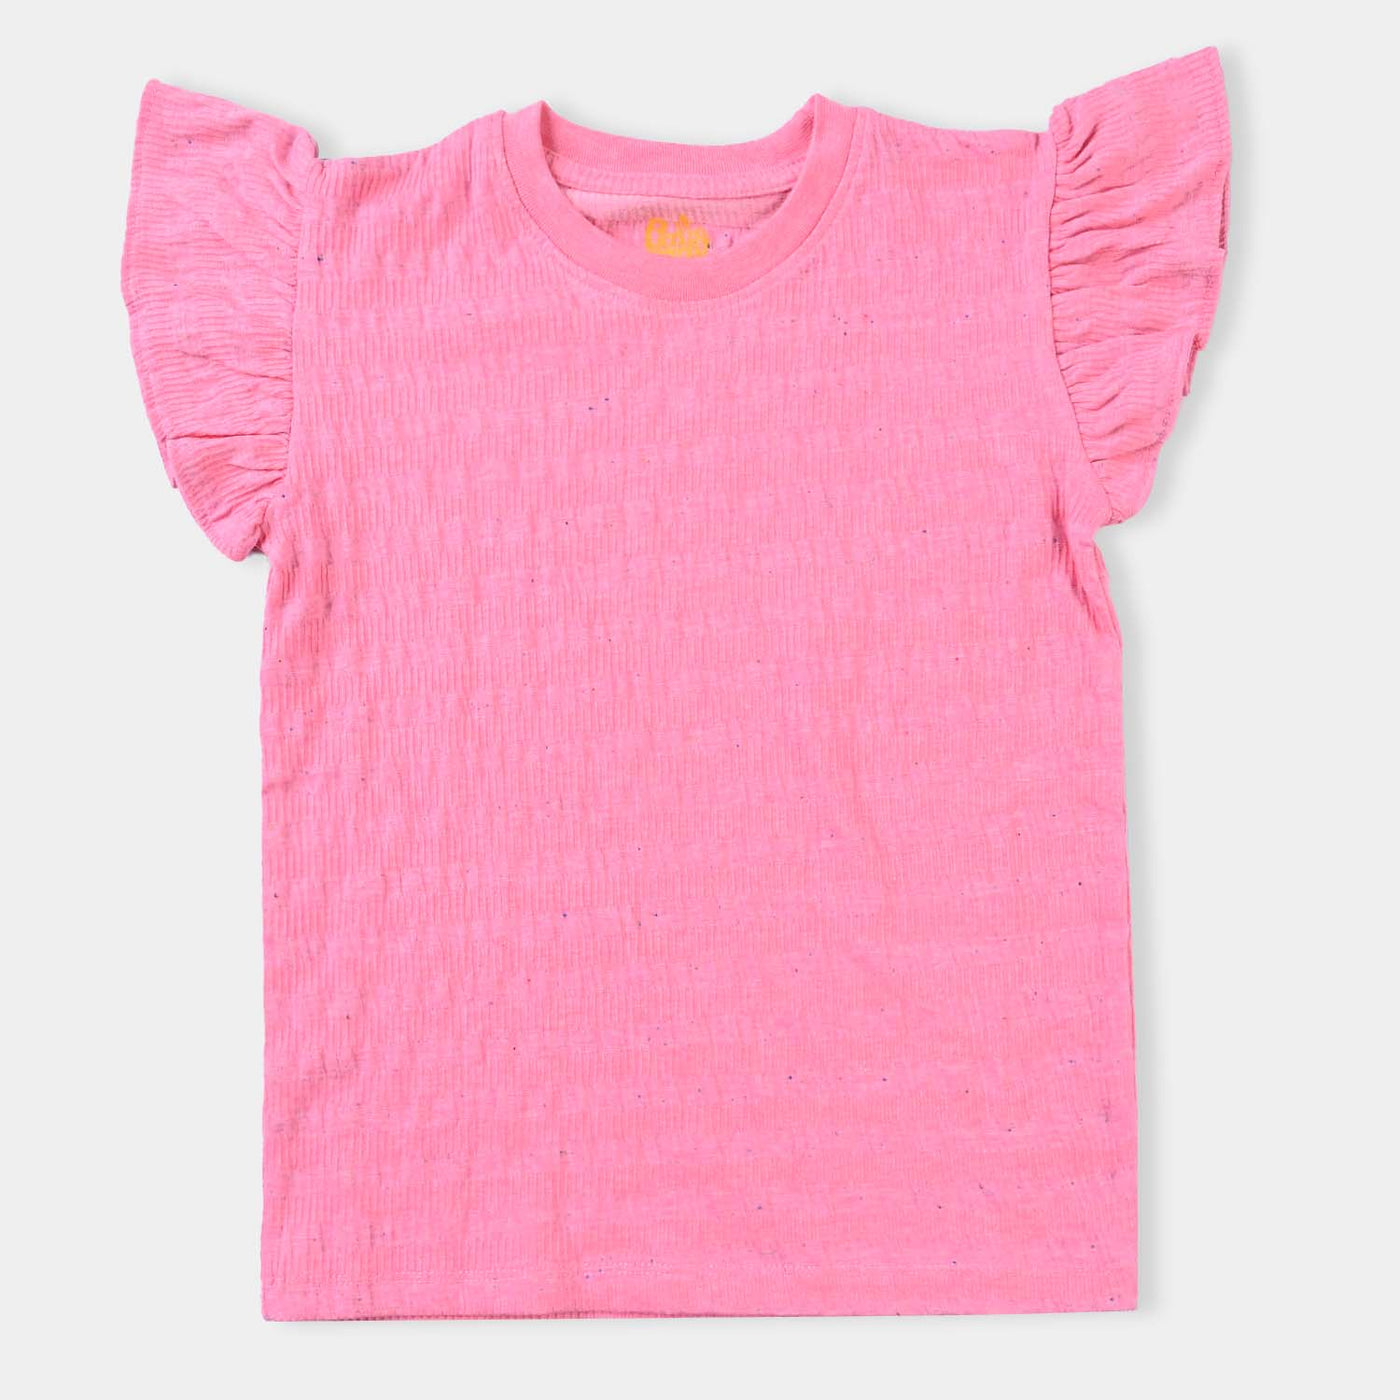 Girls Cotton Jersey T-Shirt H/S Texture-Hot Pink